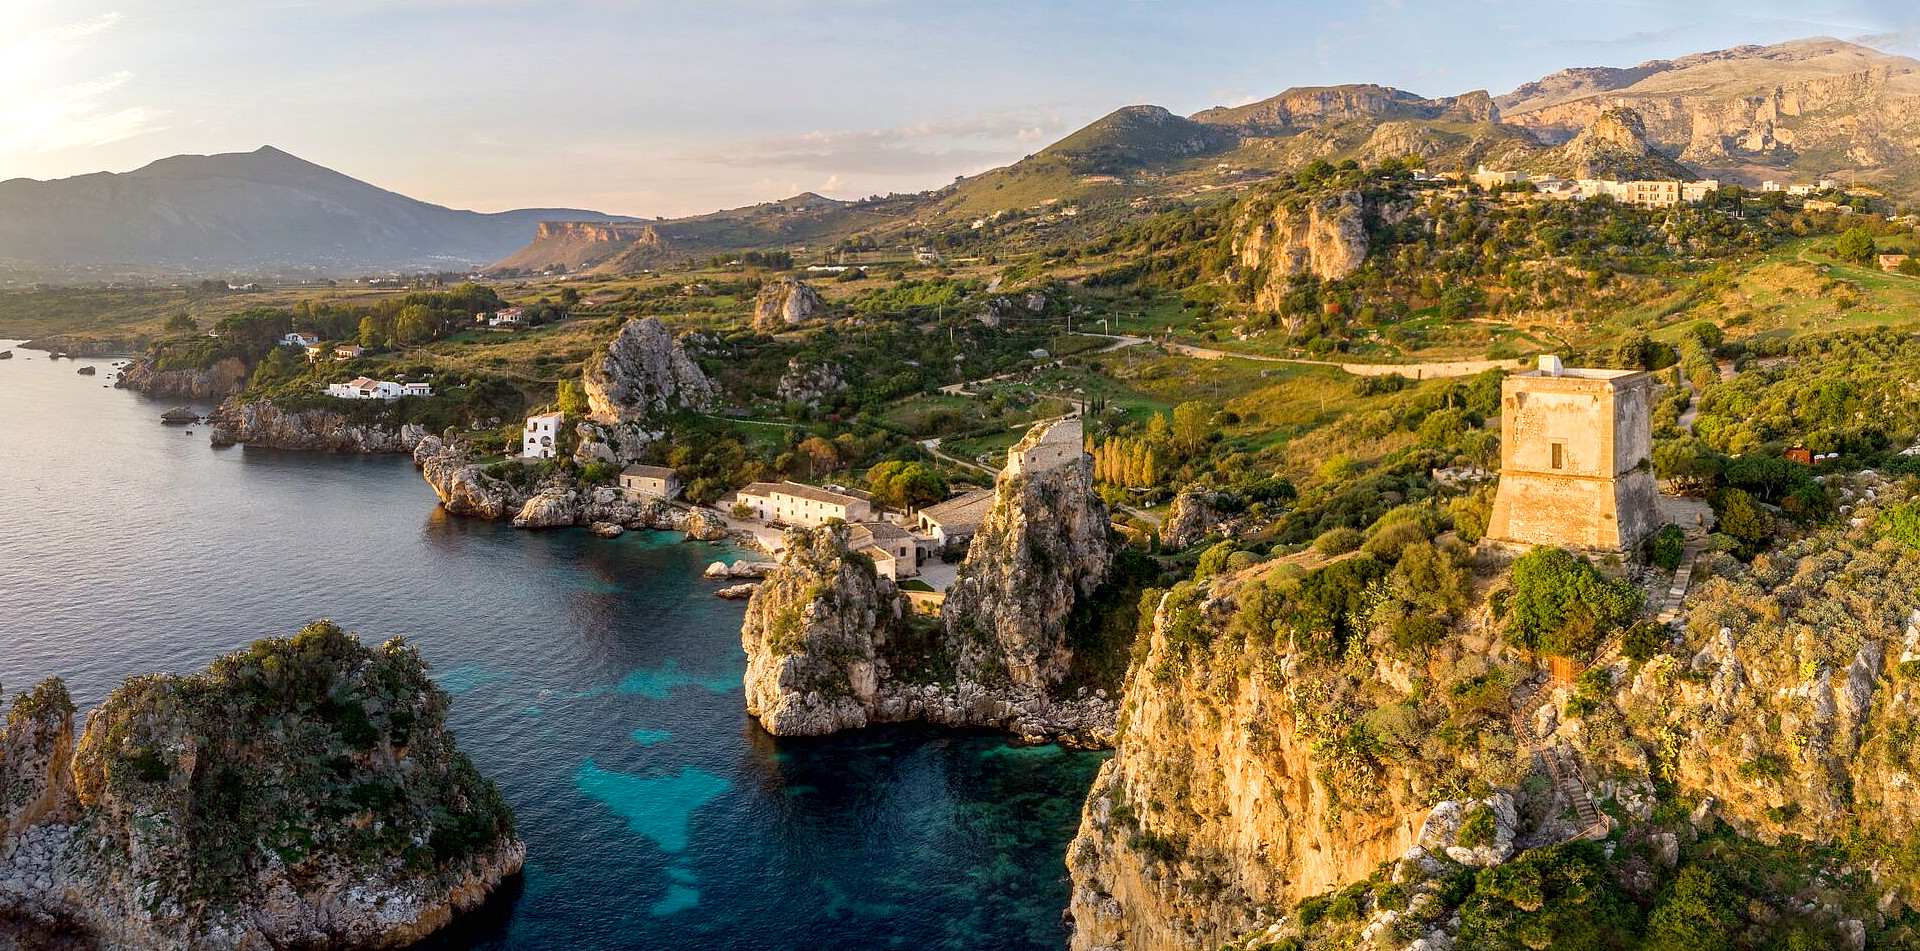 Mare, terra, roccia, cultura, questa è la Sicilia!